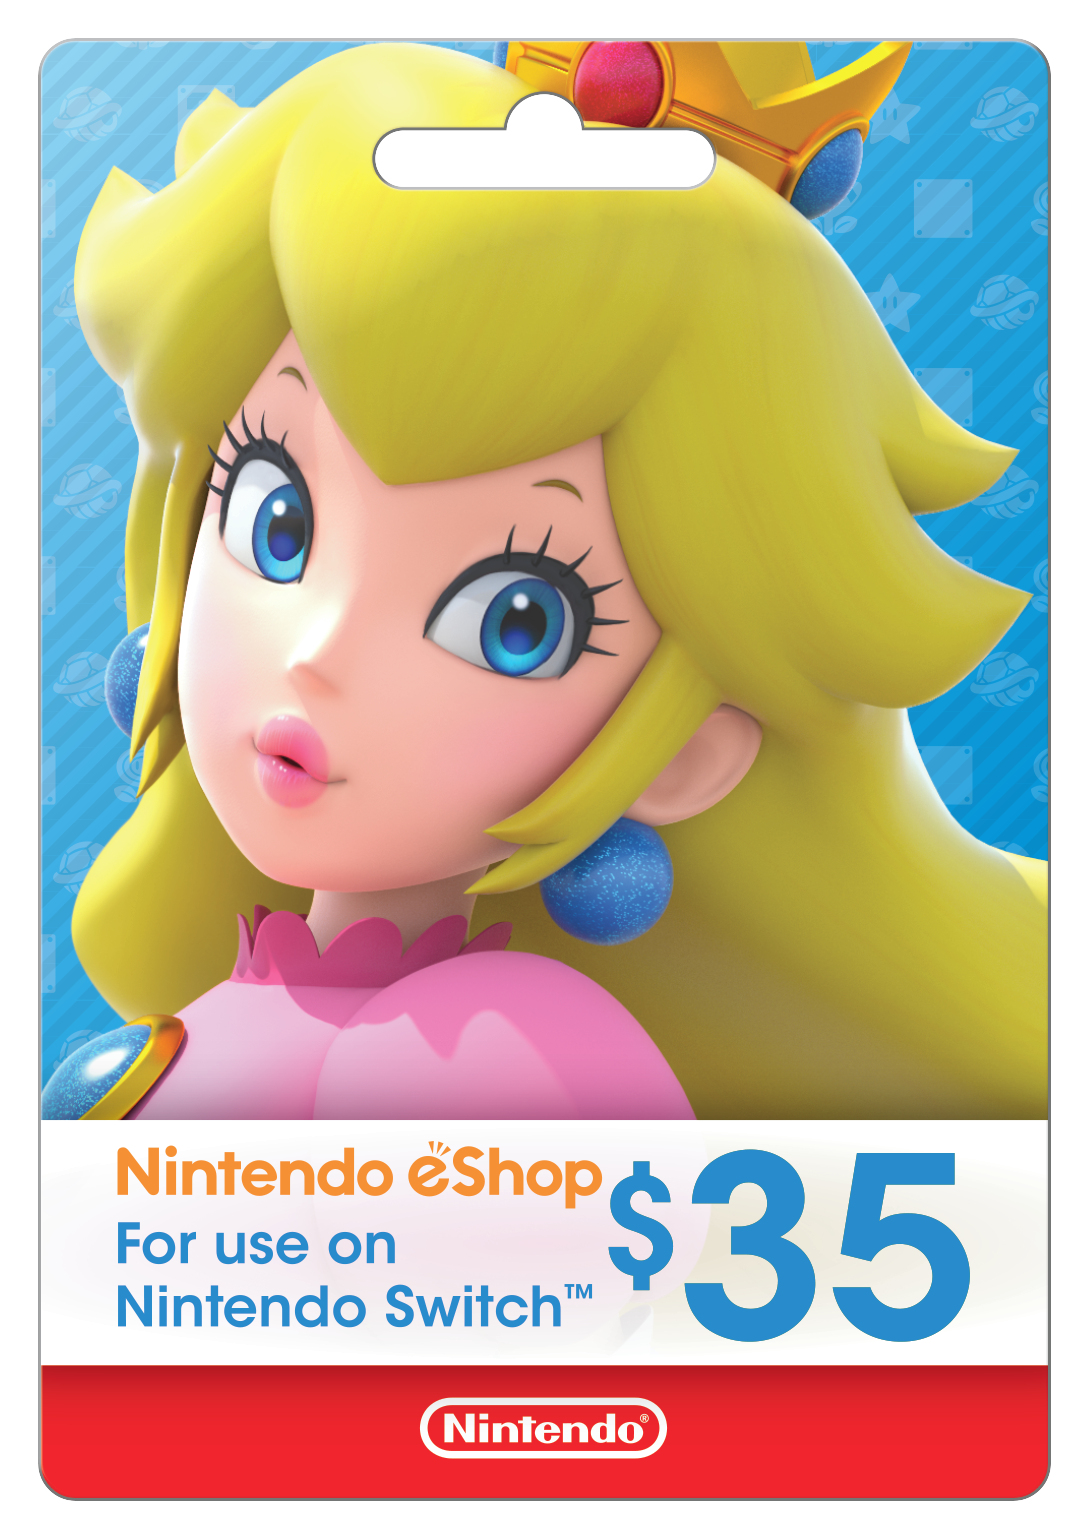 Nintendo E Shop